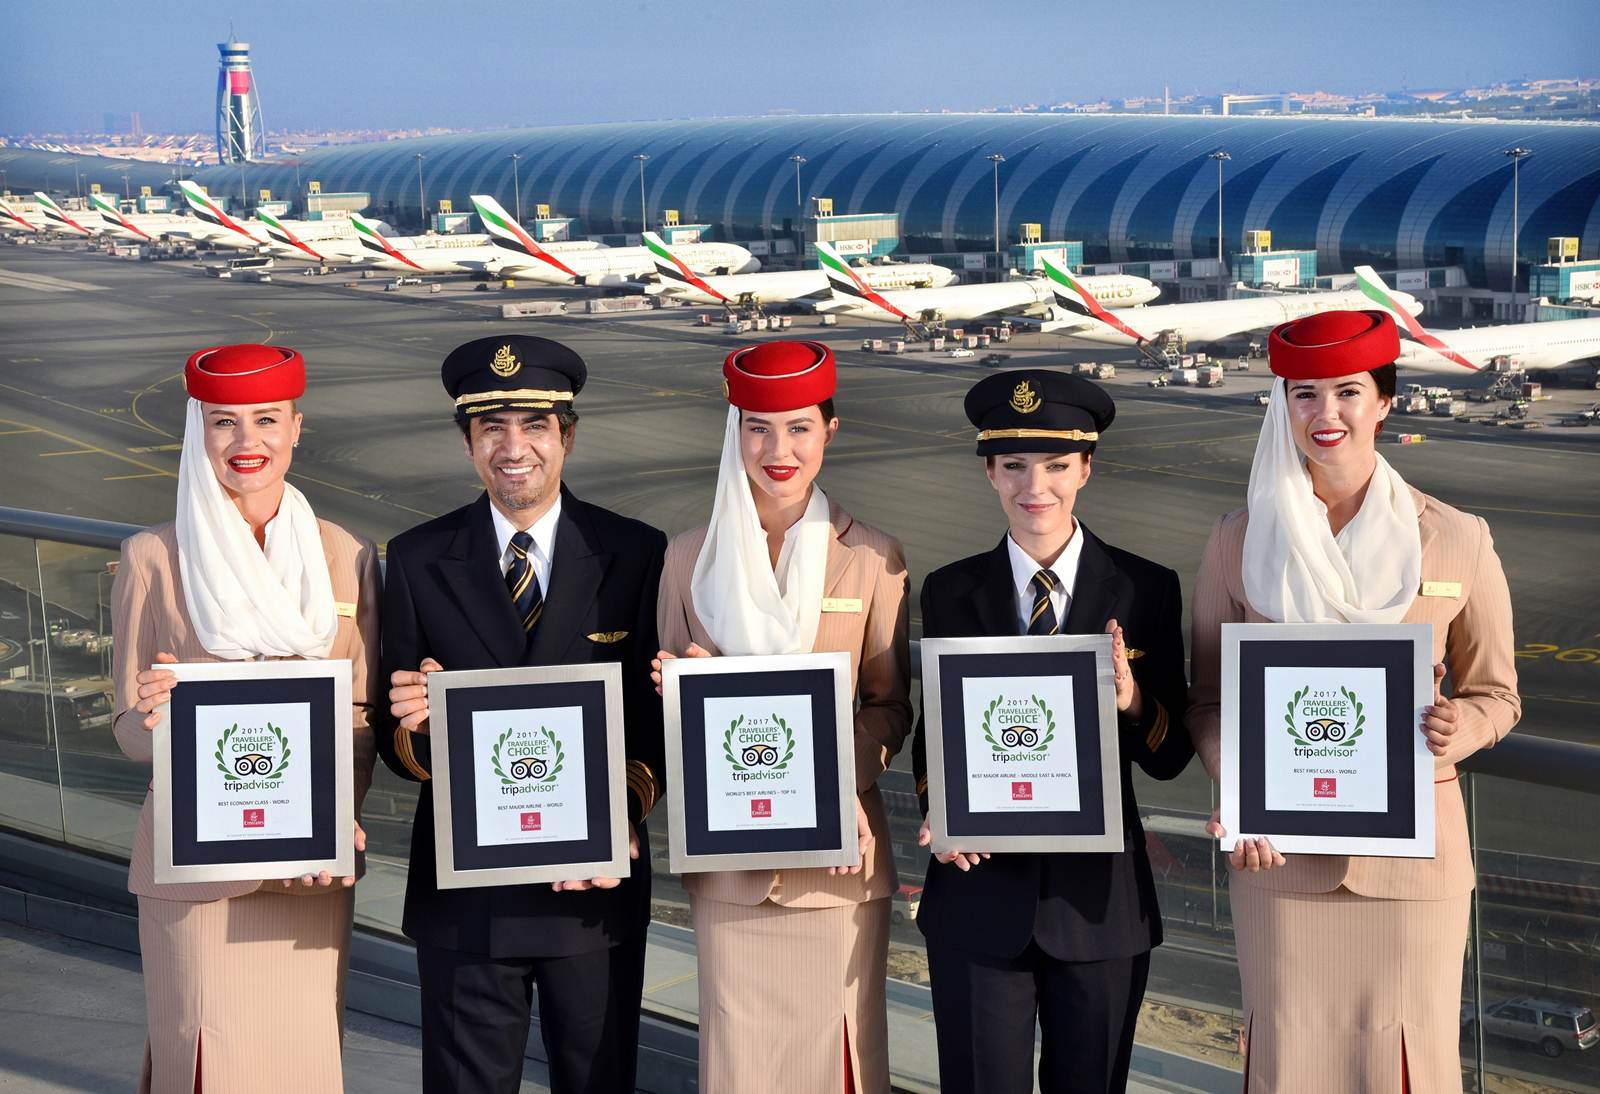 Prémios do TripAdvisor Travelers Choice Awards para a companhia Emirates